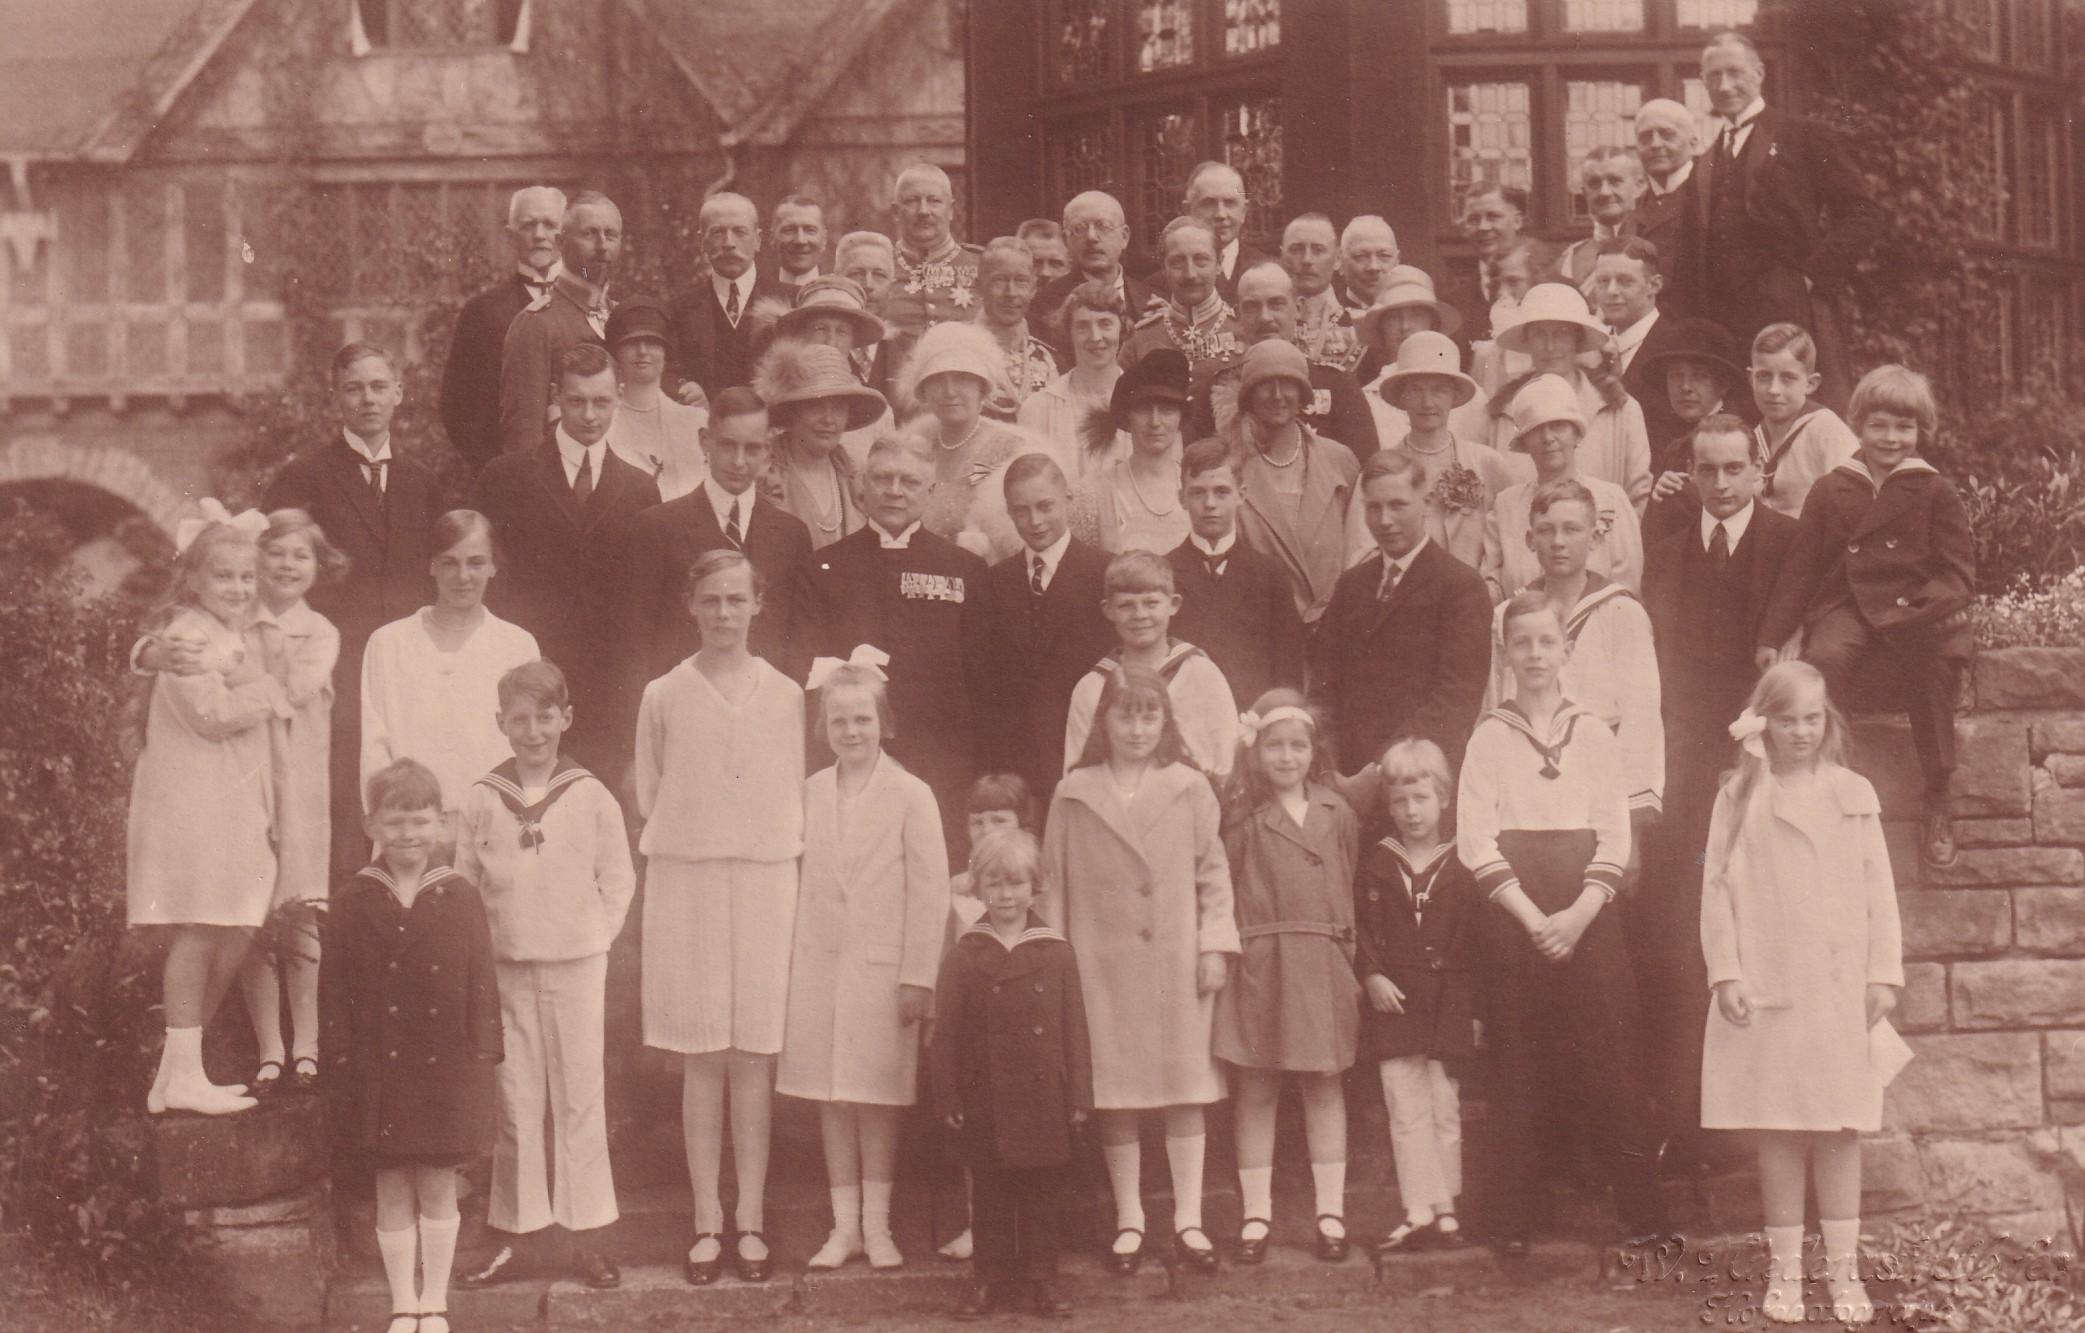 Bildpostkarte mit Gruppenfoto anlässlich der Konfirmation zweier Söhne des ehemaligen Kronprinzenpaares, 1927 (Schloß Wernigerode GmbH RR-F)